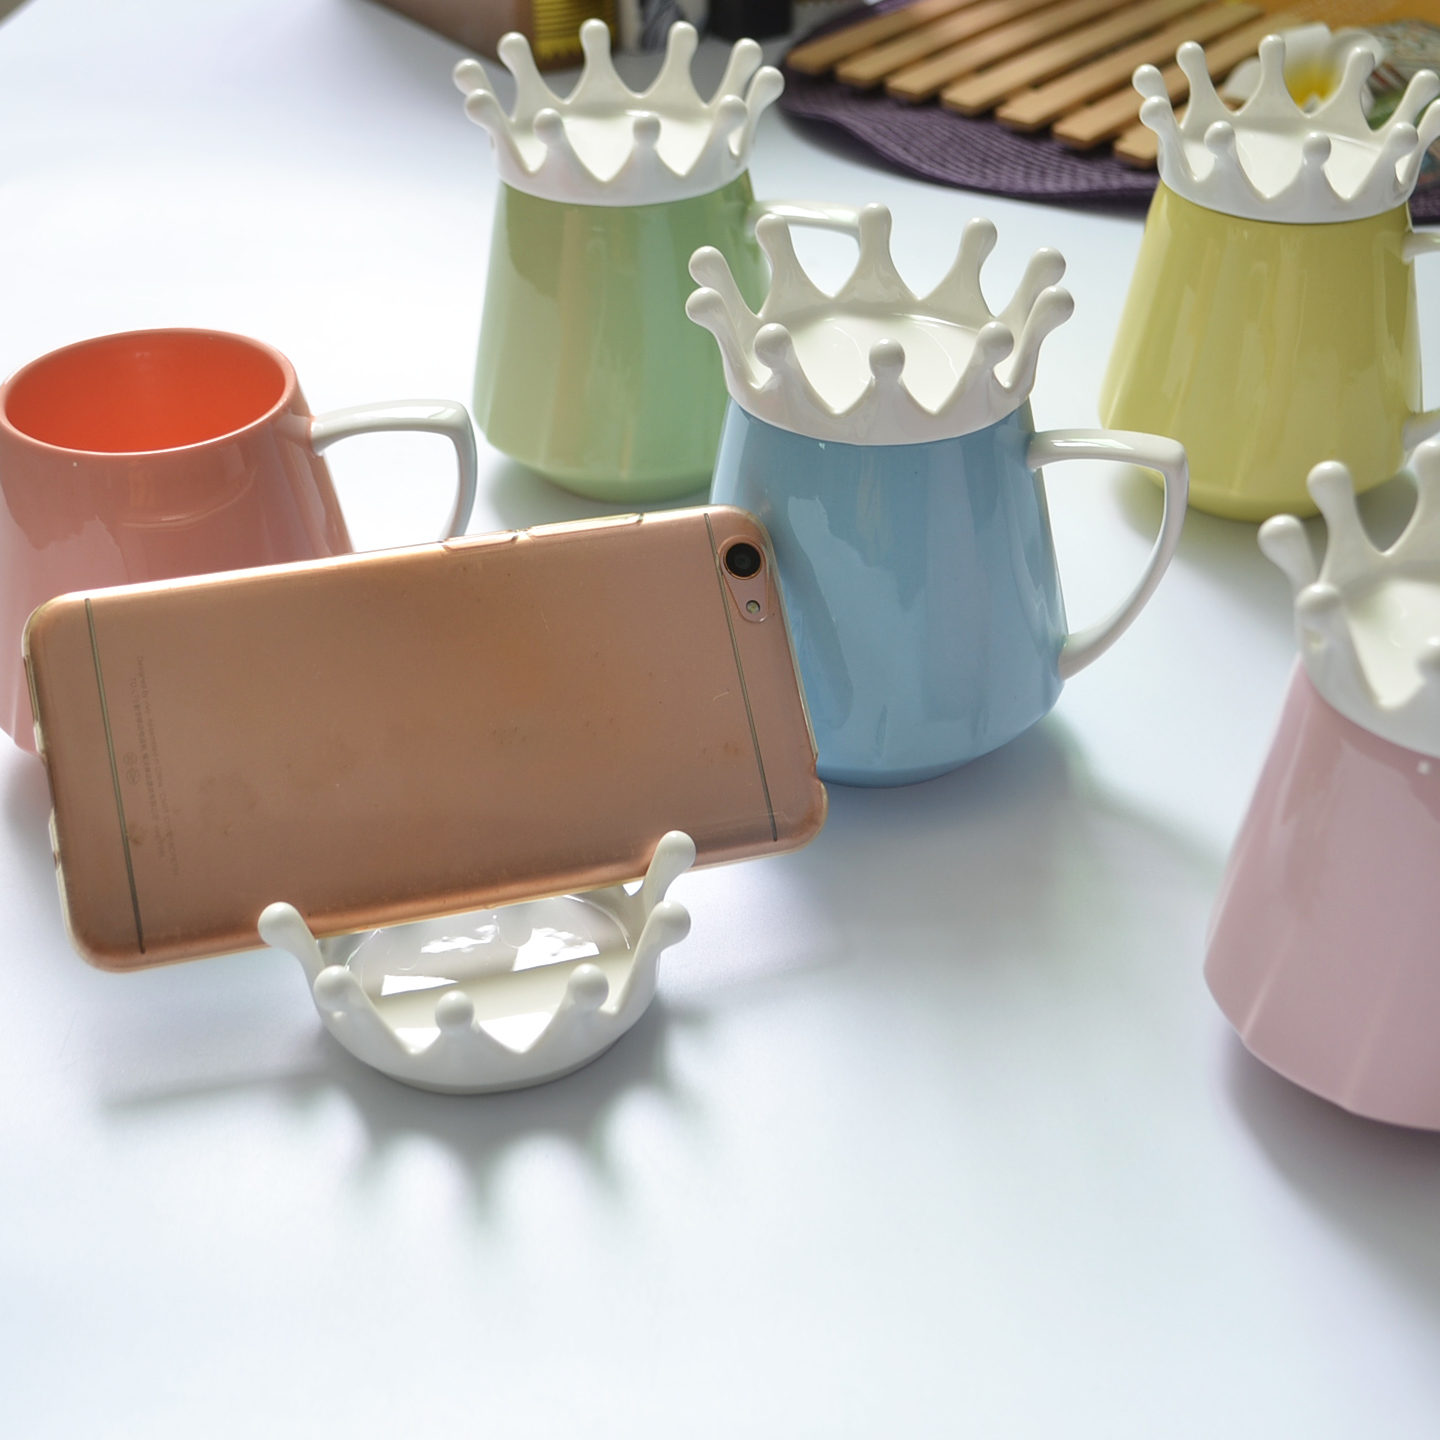 创意马克杯陶瓷 色土陶瓷 礼品陶瓷杯 皇冠女神杯 可订制加印LOGO